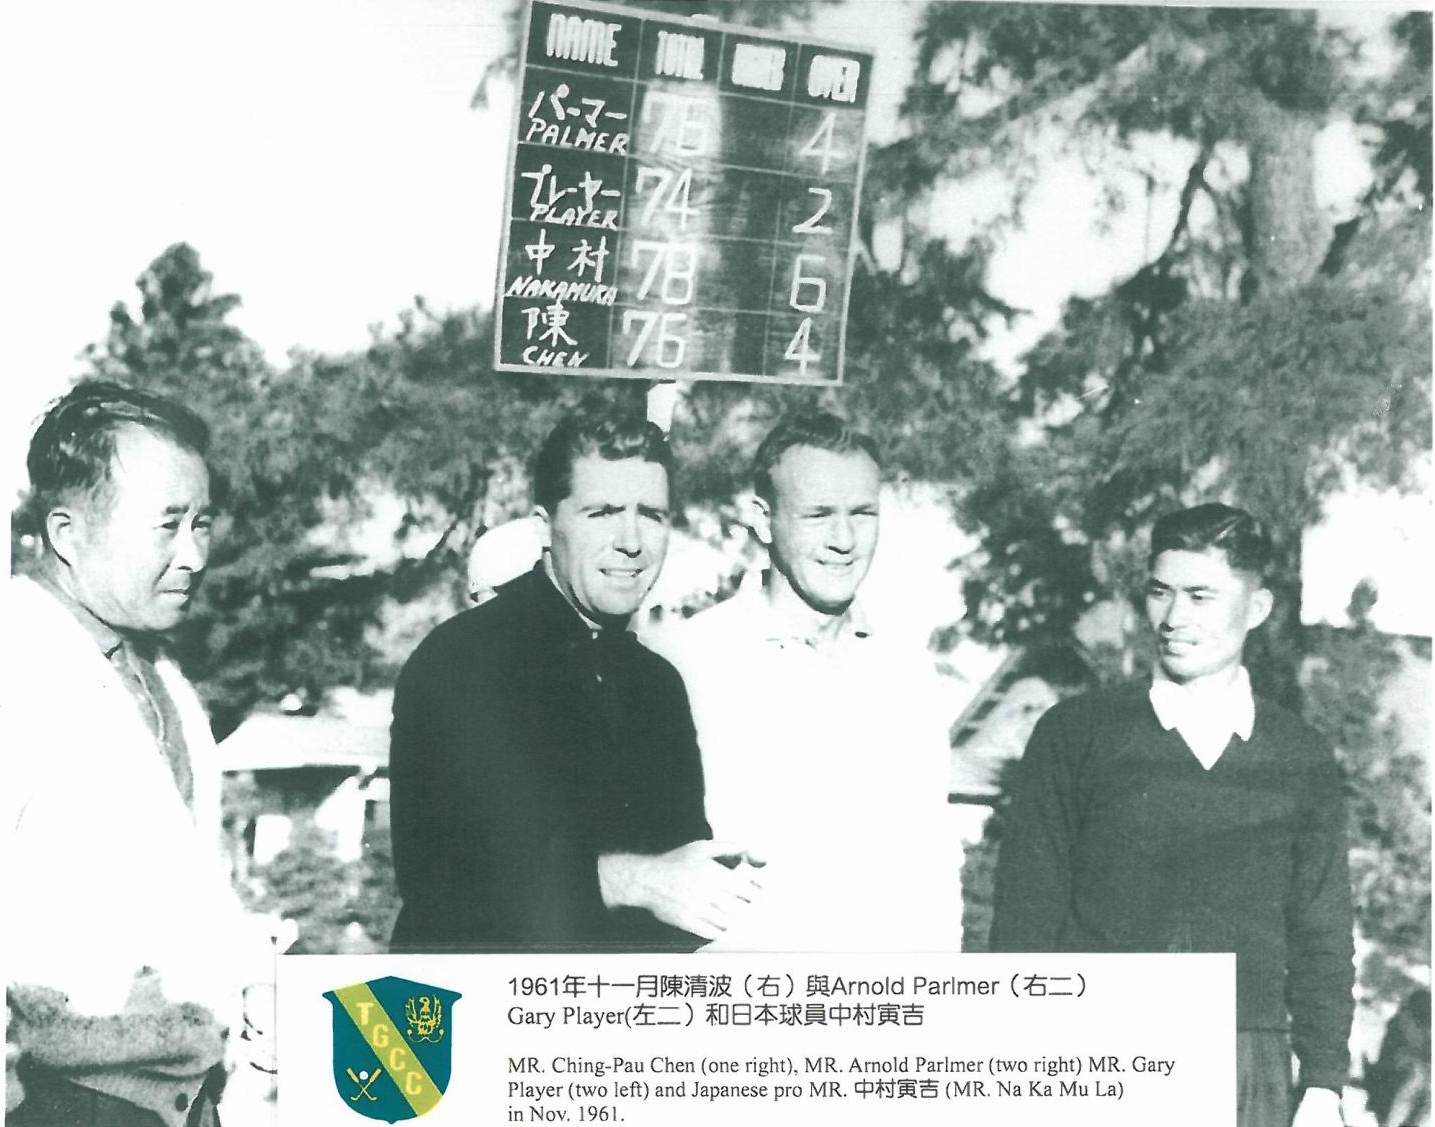 老淡水歷史照》1961年11月，(自左至右) 中村寅吉、普萊耶、帕瑪、陳清波四人於老淡水同場競技。